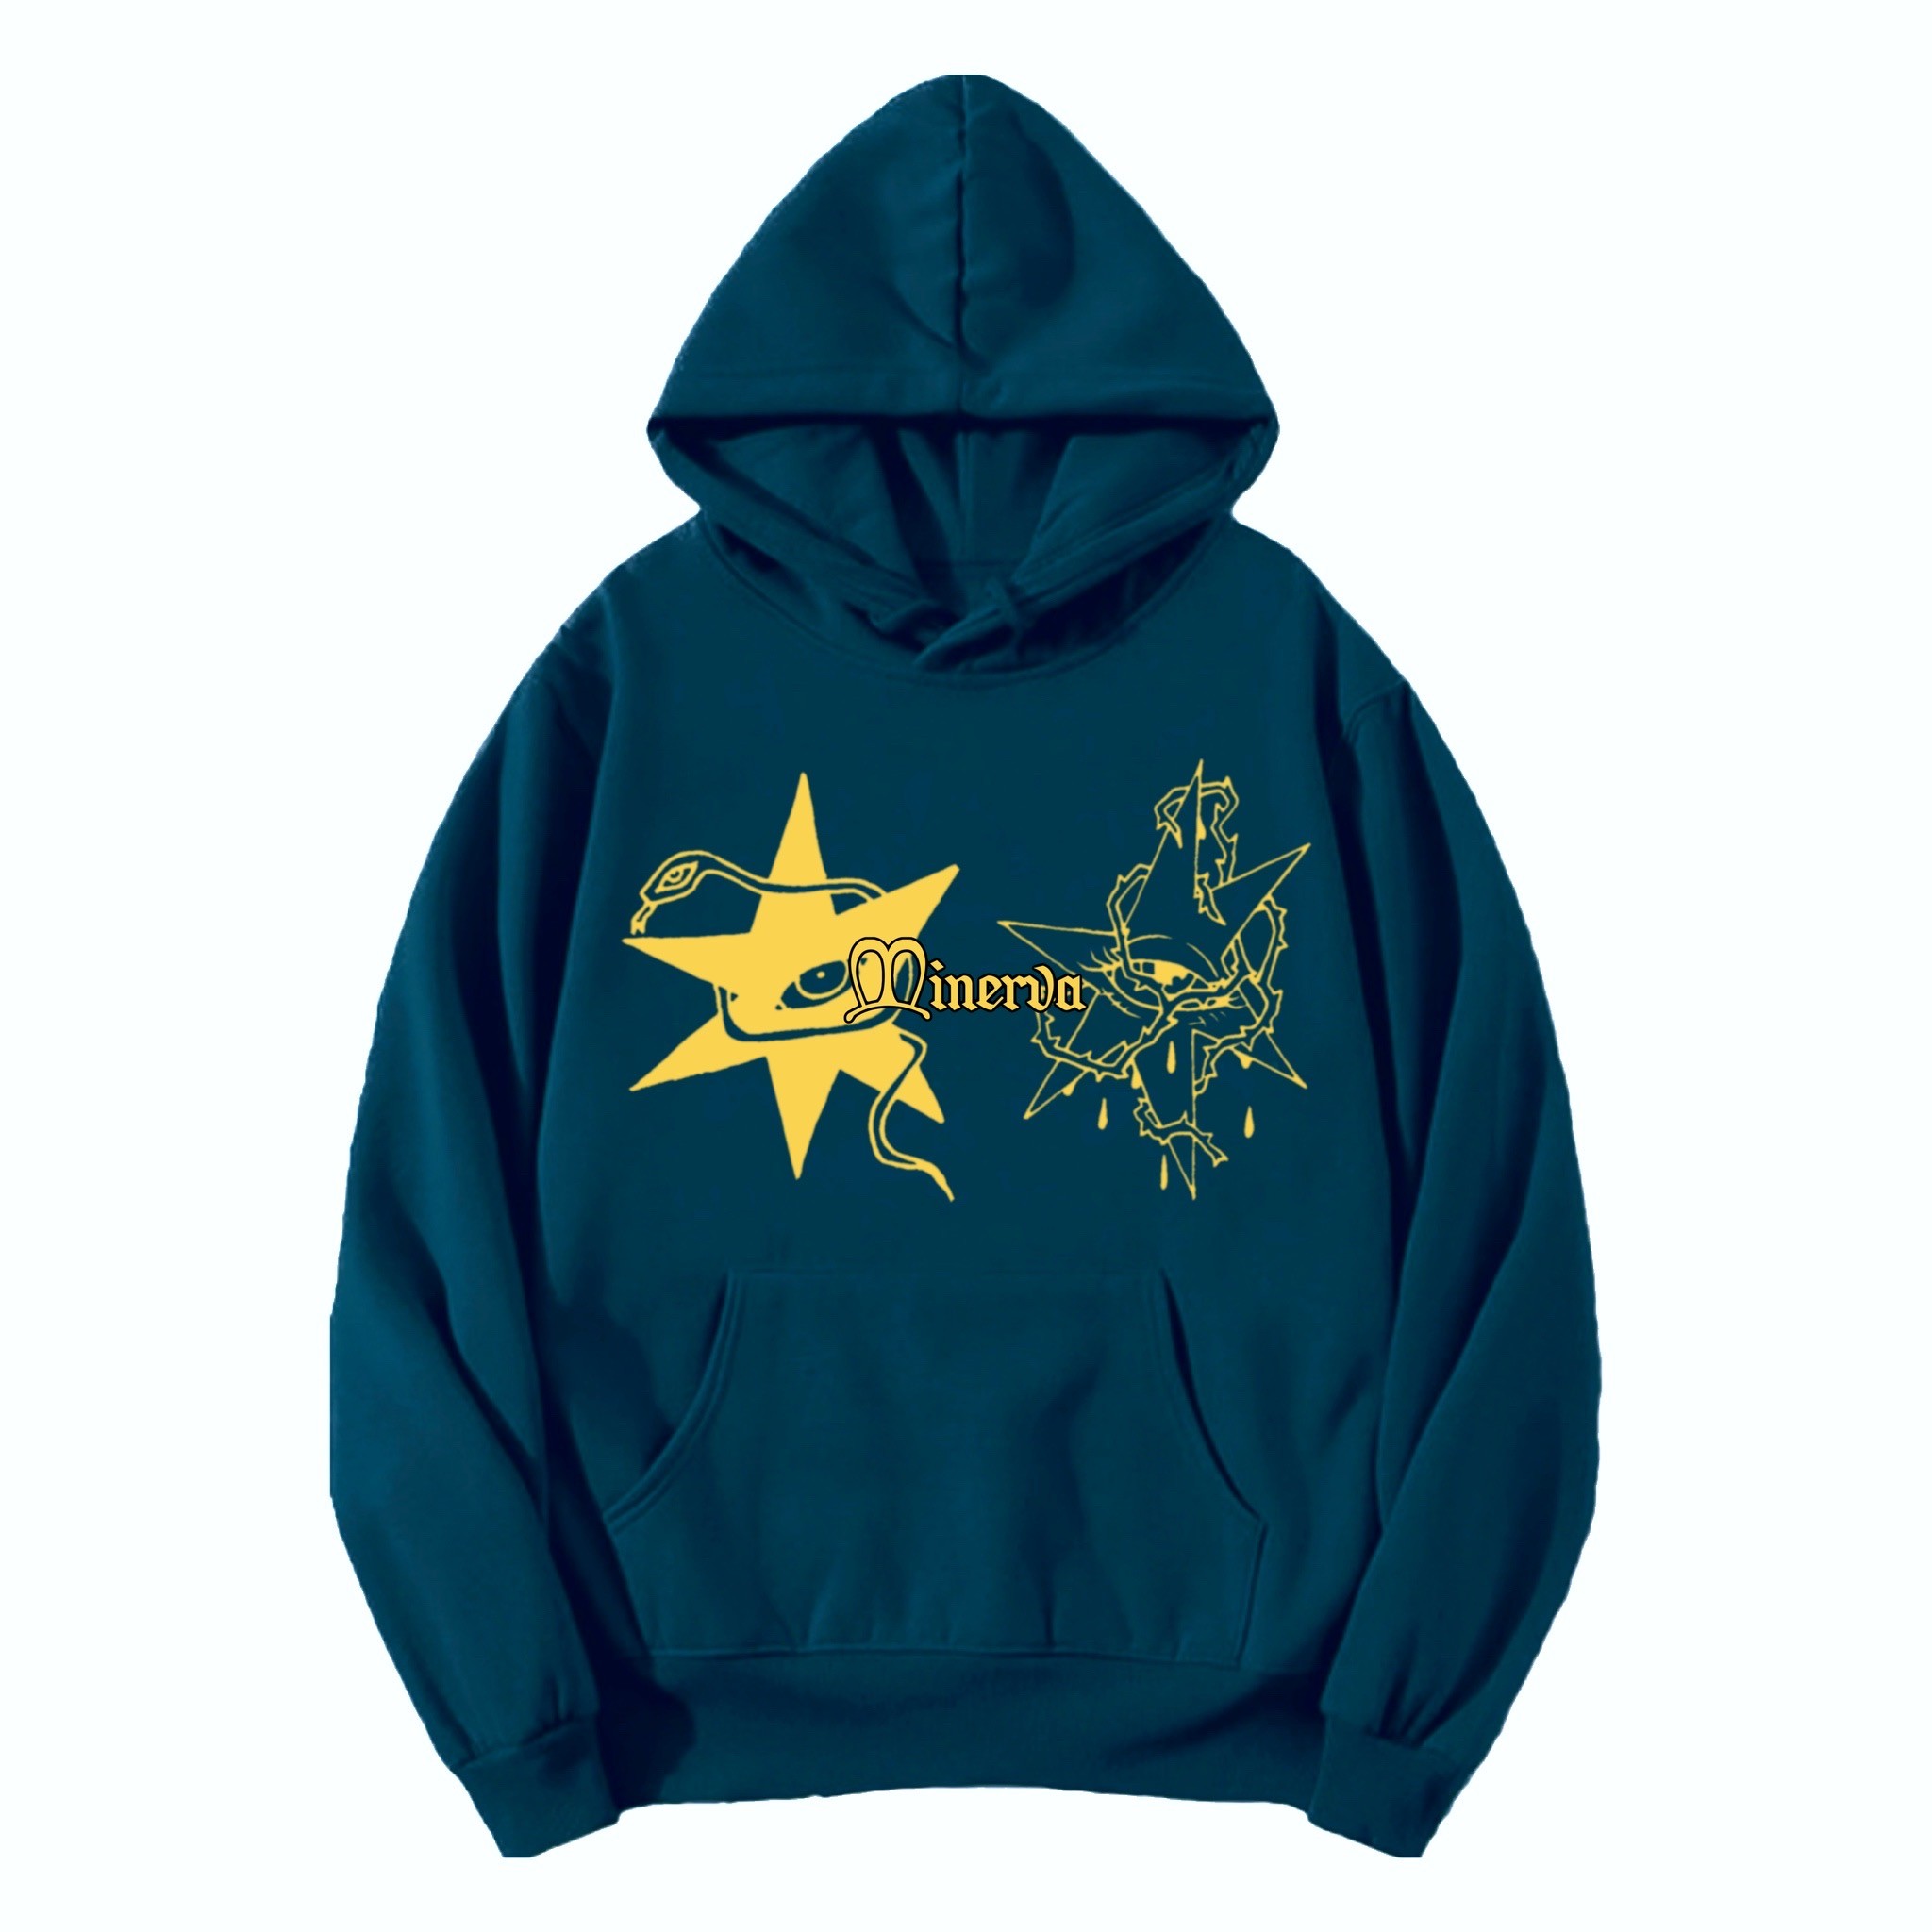 STARS printed teal green hoodie